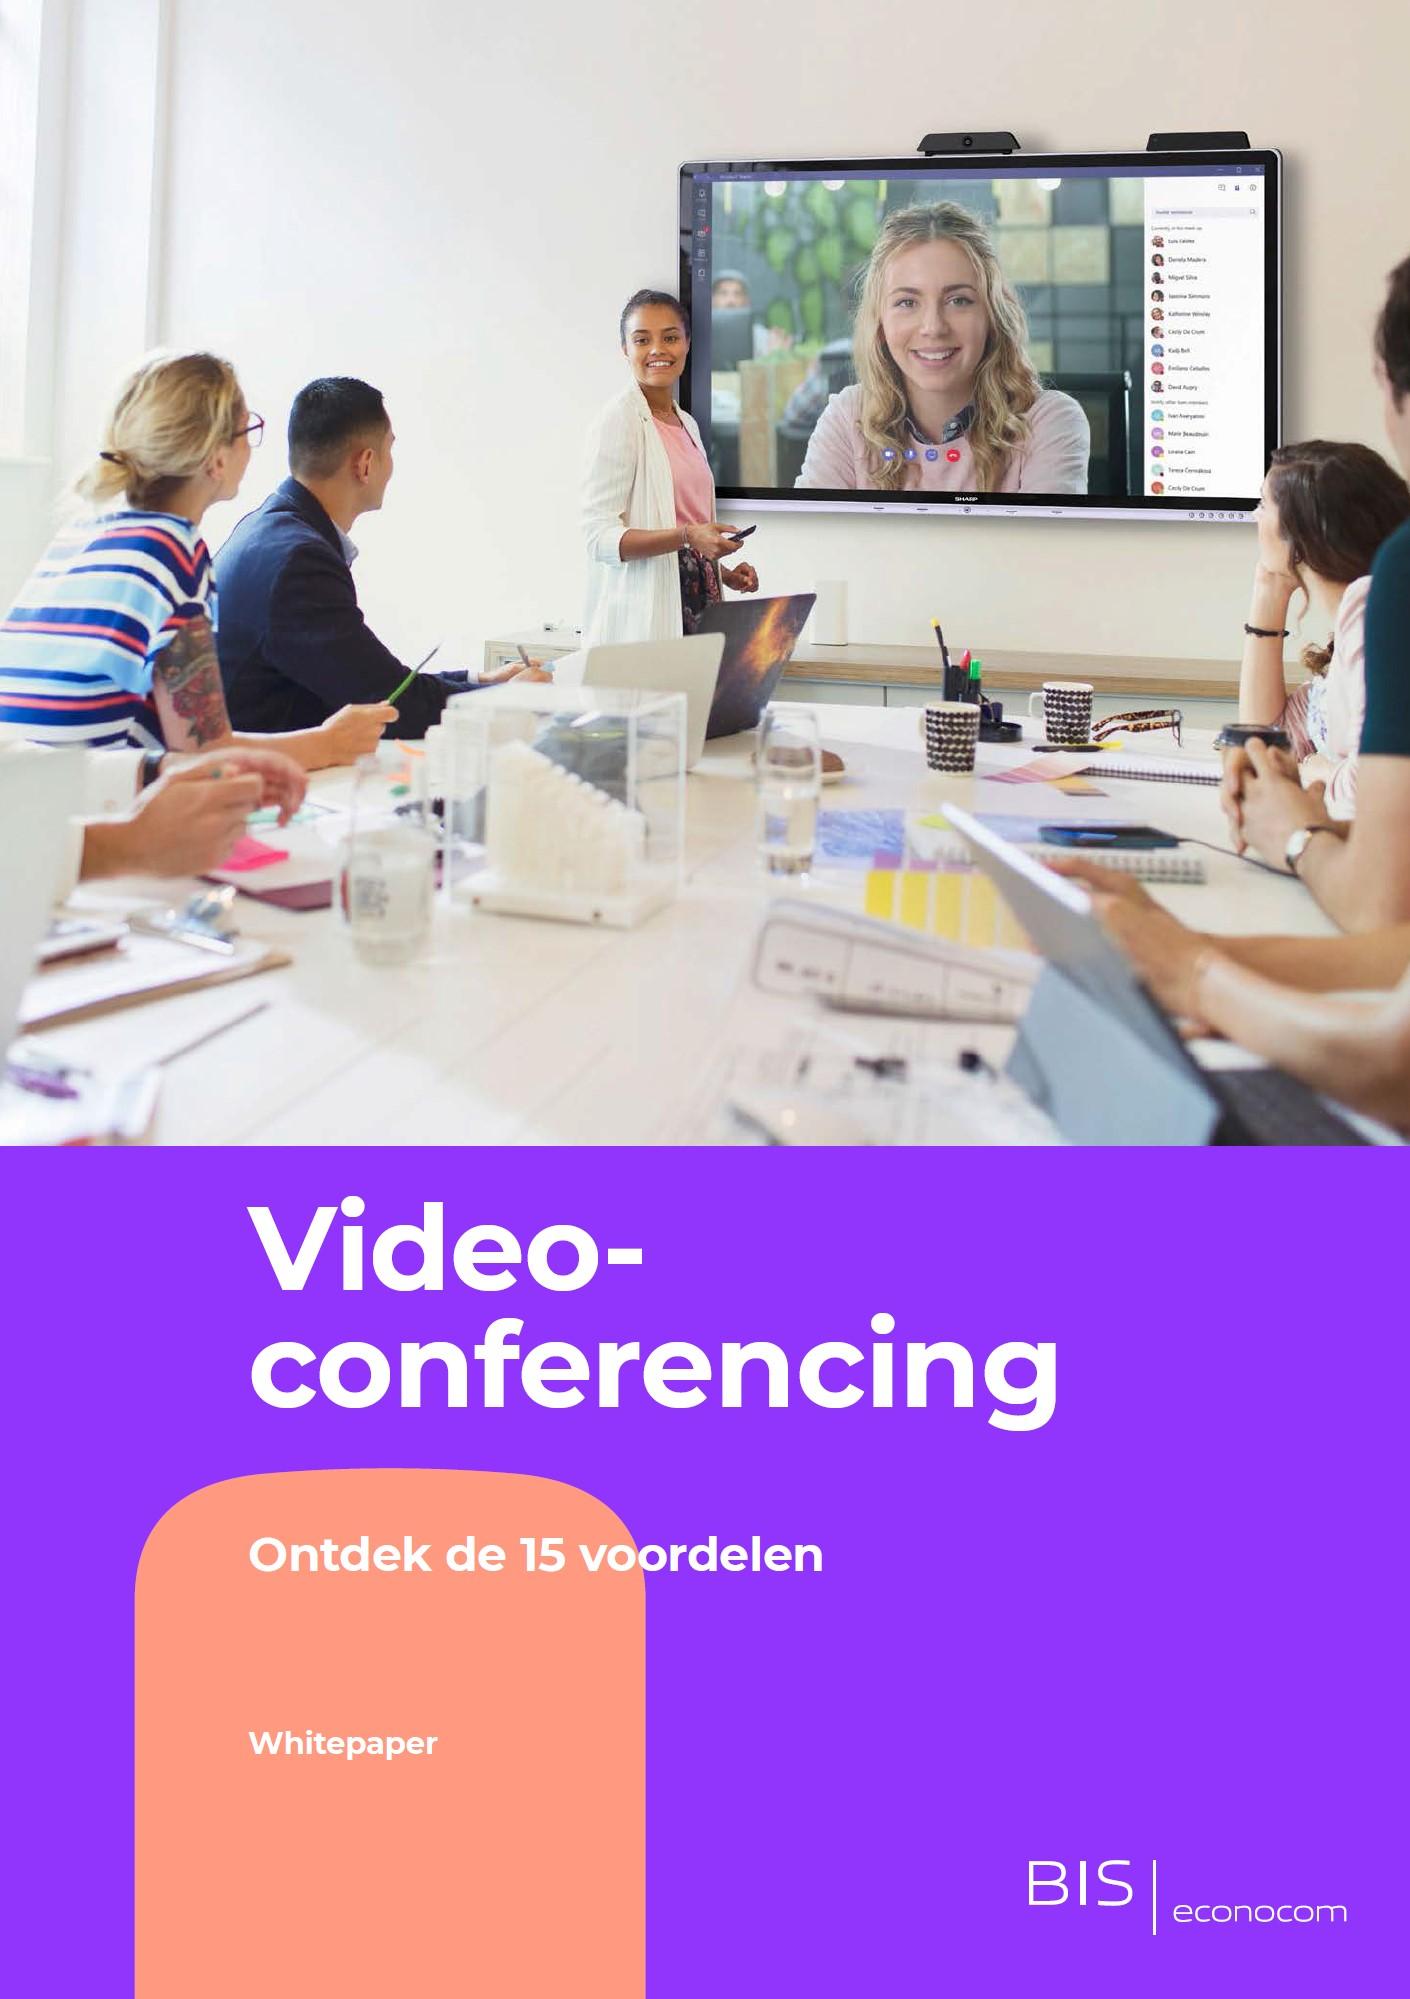 Hartelijk dank voor je interesse! <br><br>Je bent nog één klik verwijderd om de 15 voordelen van Videoconferencing te ontdekken.